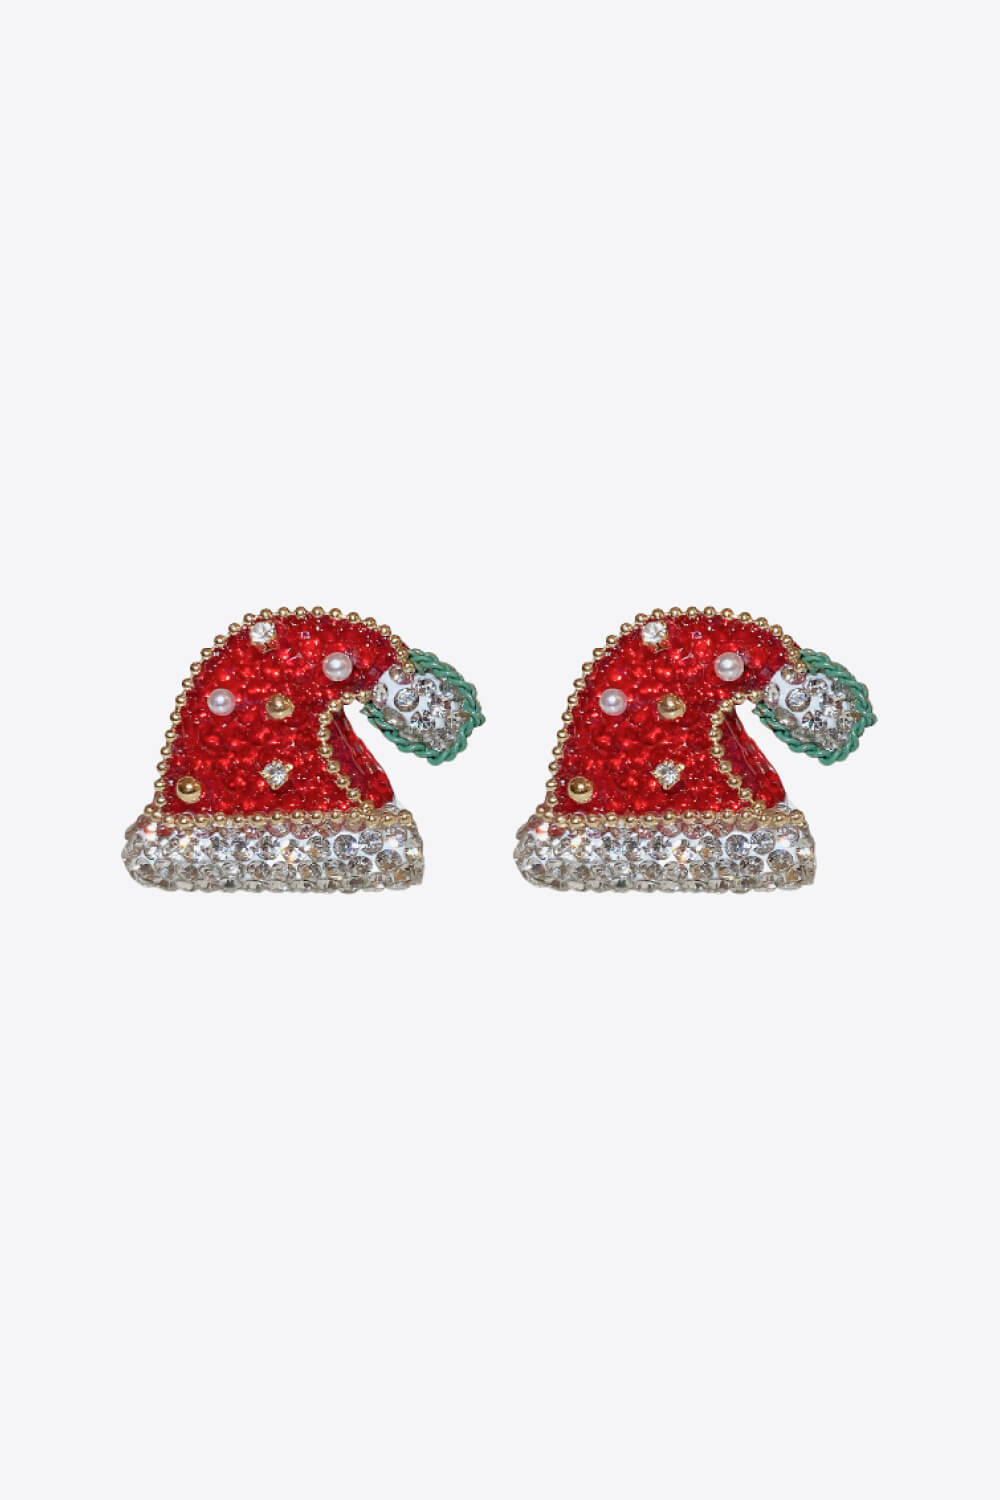 Rhinestone Christmas Hat Earrings